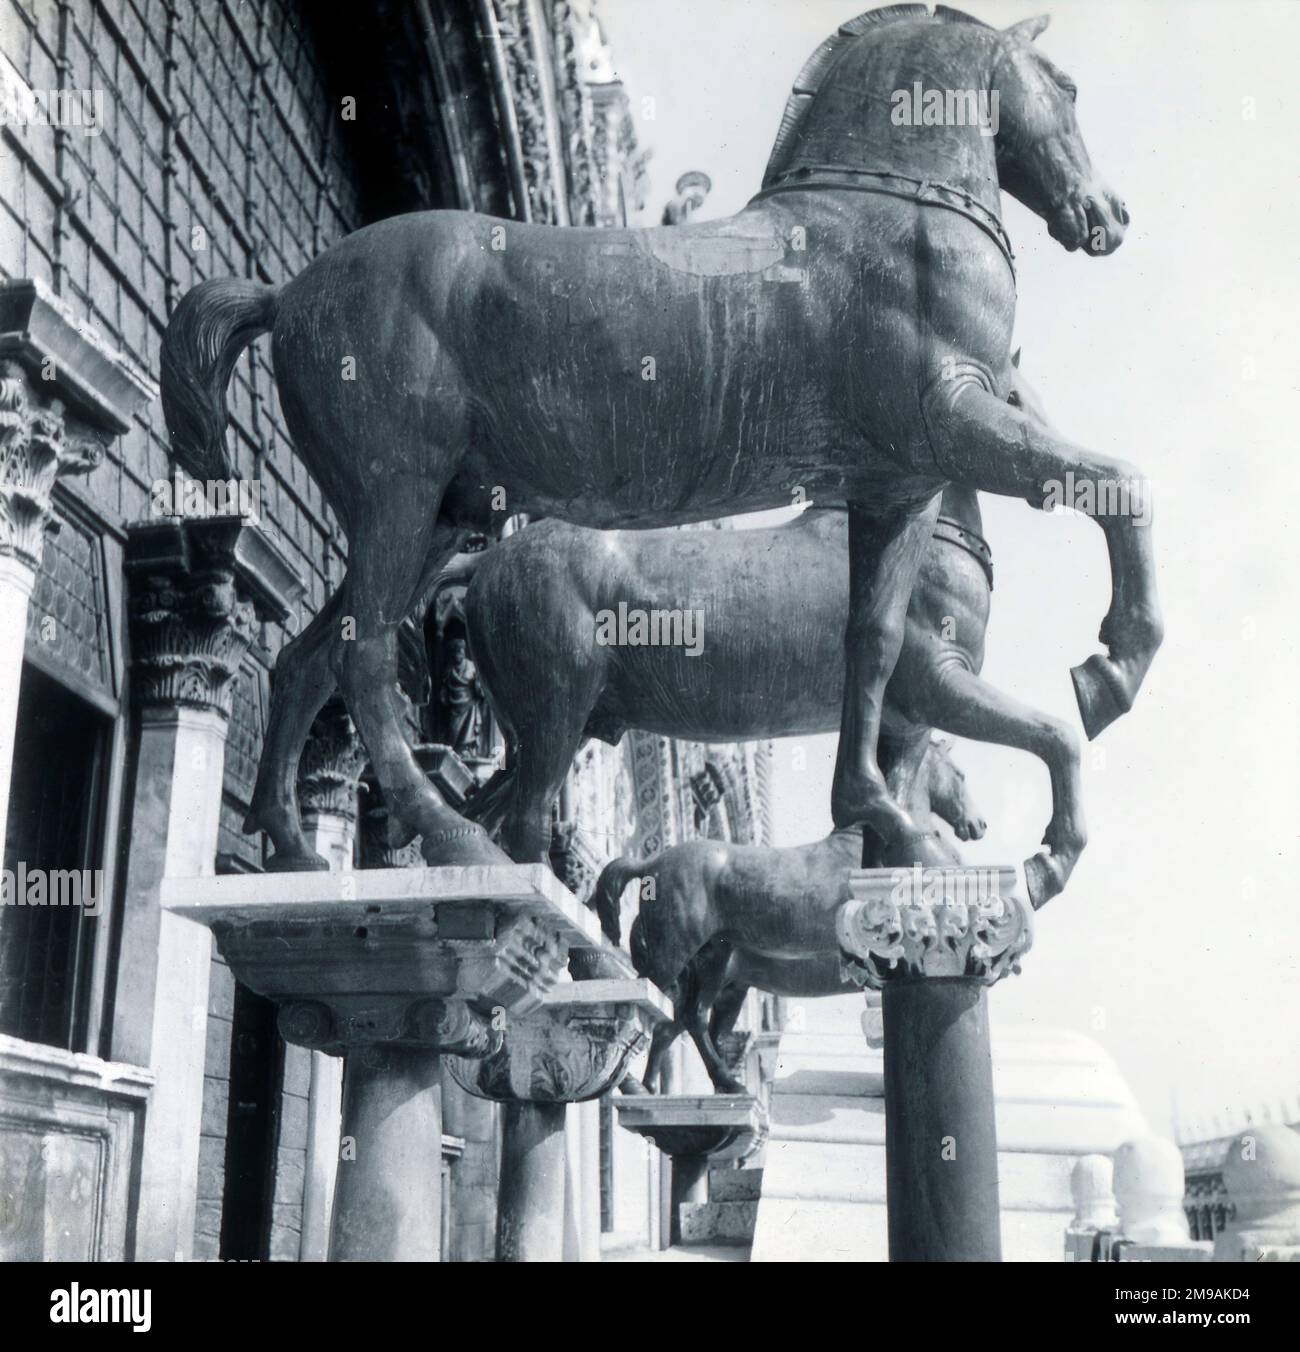 Die Pferde des Heiligen Markus (Cavalli di San Marco), auch bekannt als Triumphquadriga, byzantinische Bronzestatuen von vier Pferden, ursprünglich Teil eines Monuments mit einer Quadriga, Venedig, Italien. Stockfoto